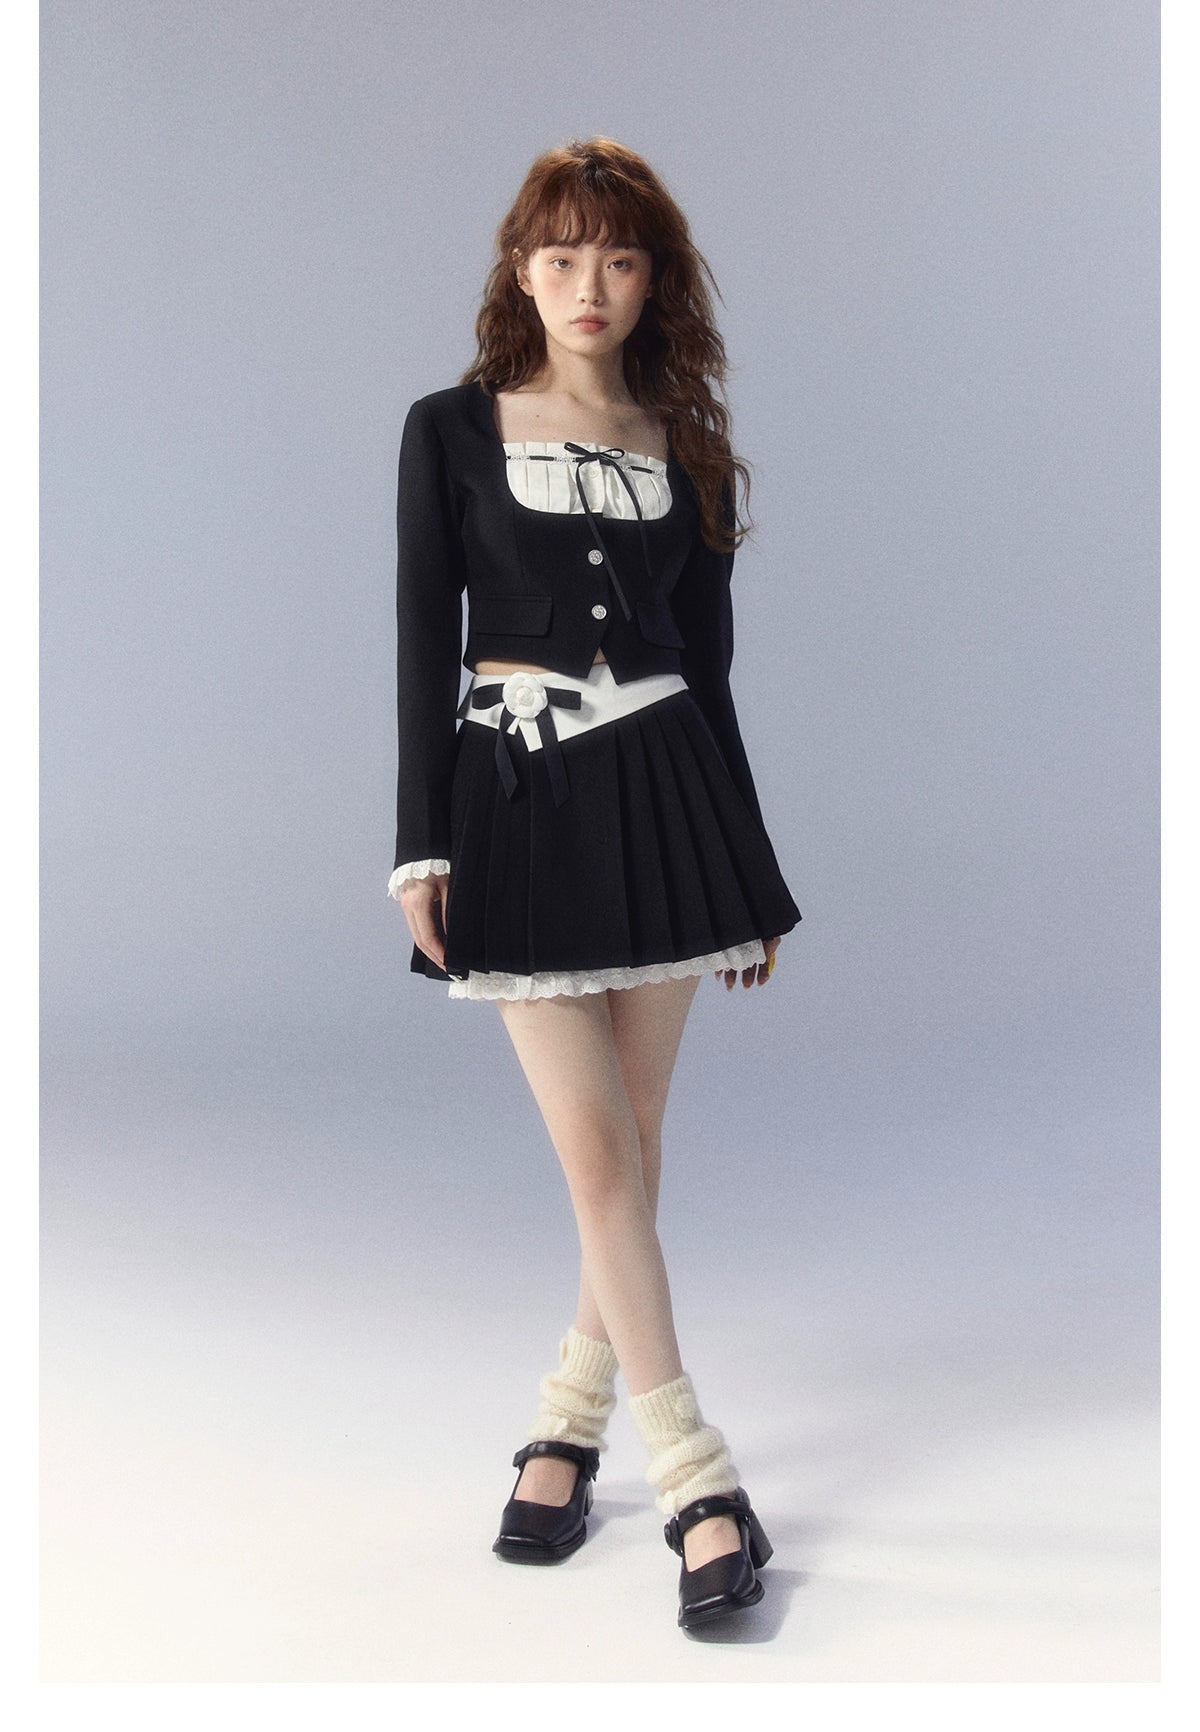 White Square-neck Cardigan &amp; Skirt Set - CHINASQUAD